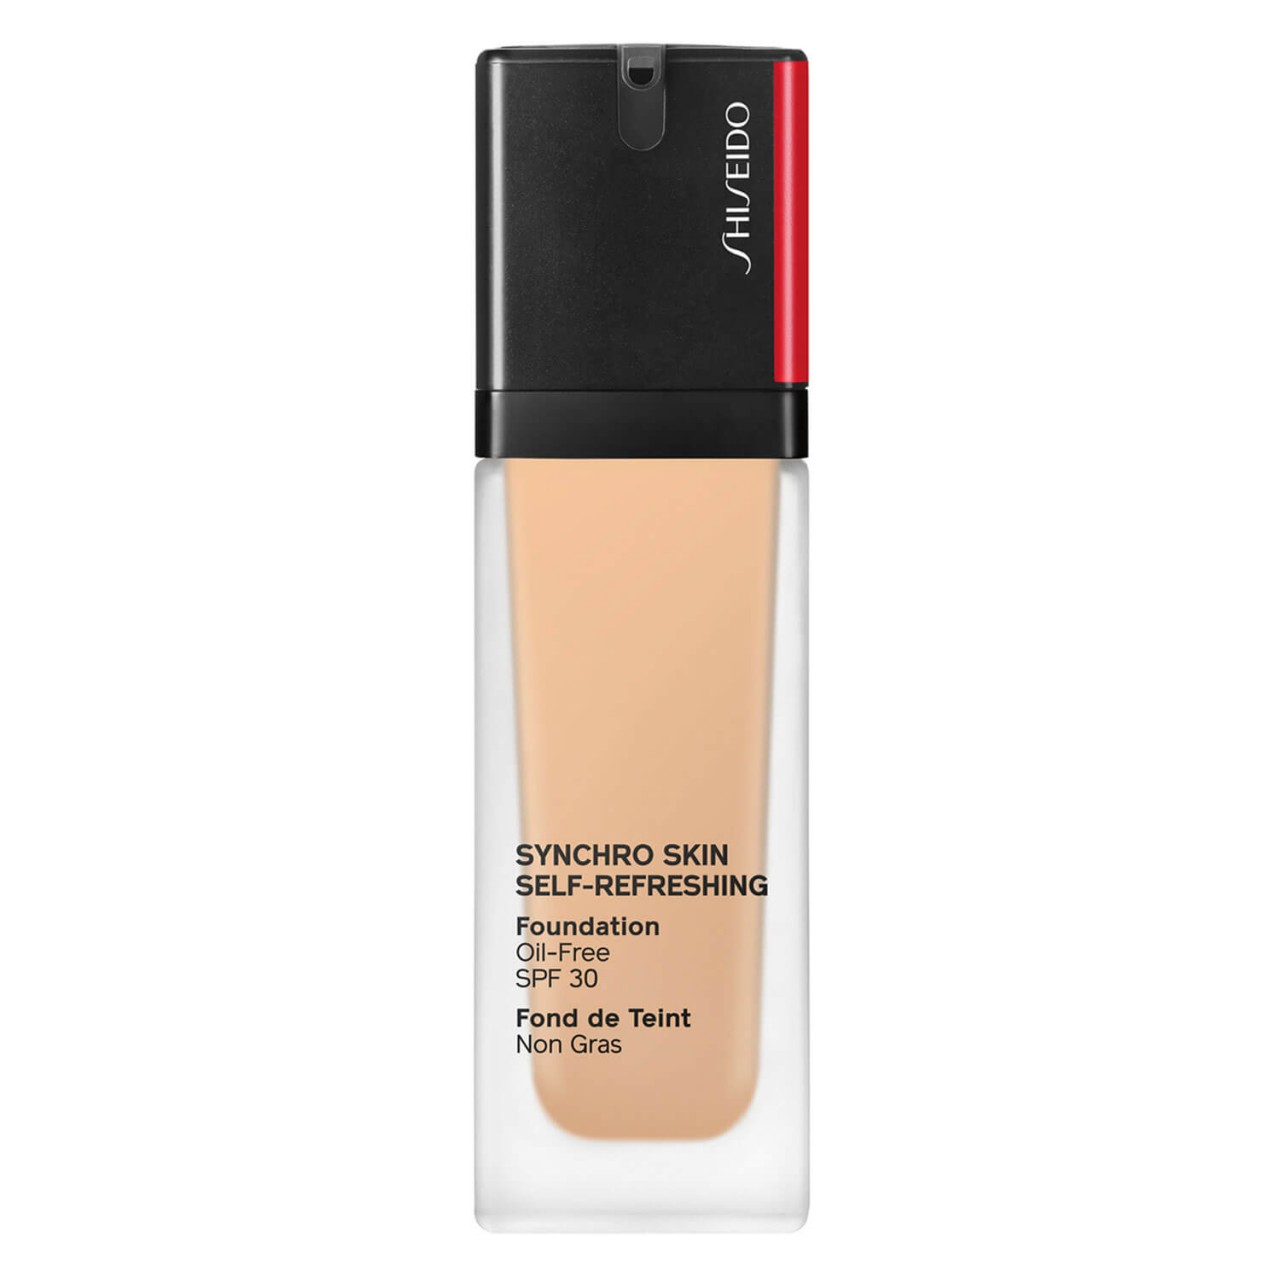 Synchro Skin Self-Refreshing - Foundation SPF 30 Cashmere 260 von Shiseido